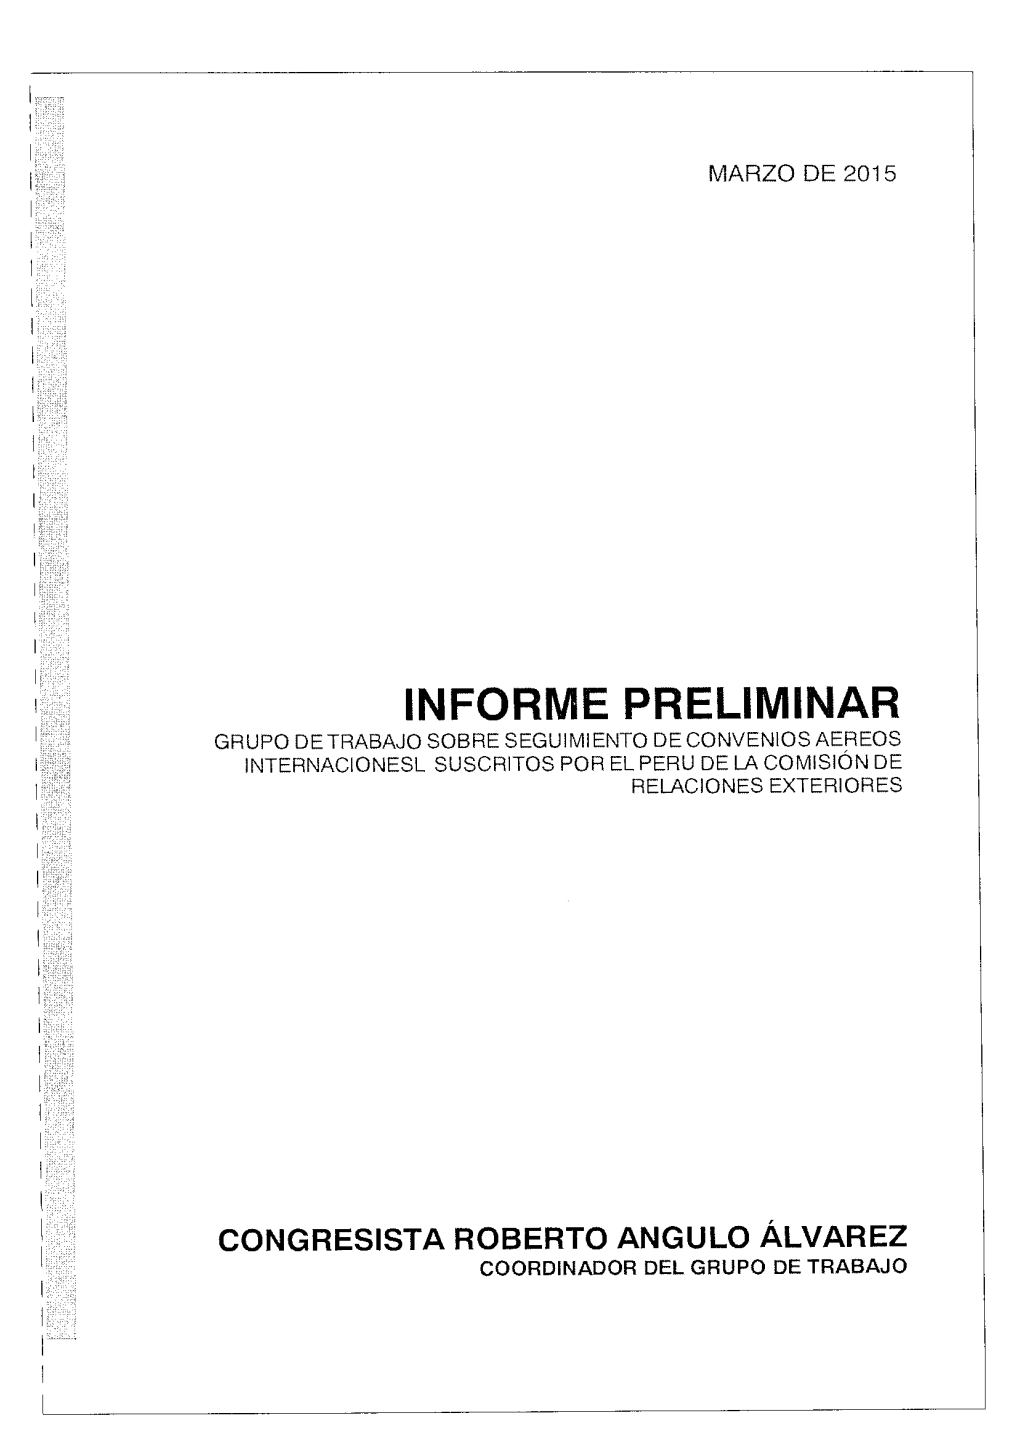 Informe Preliminar Grupo De Trabajo Sobre Seguimiento De Convenios Aereos Internacionesl Suscritos Por El Peru De La Comisión De Relaciones Exteriores